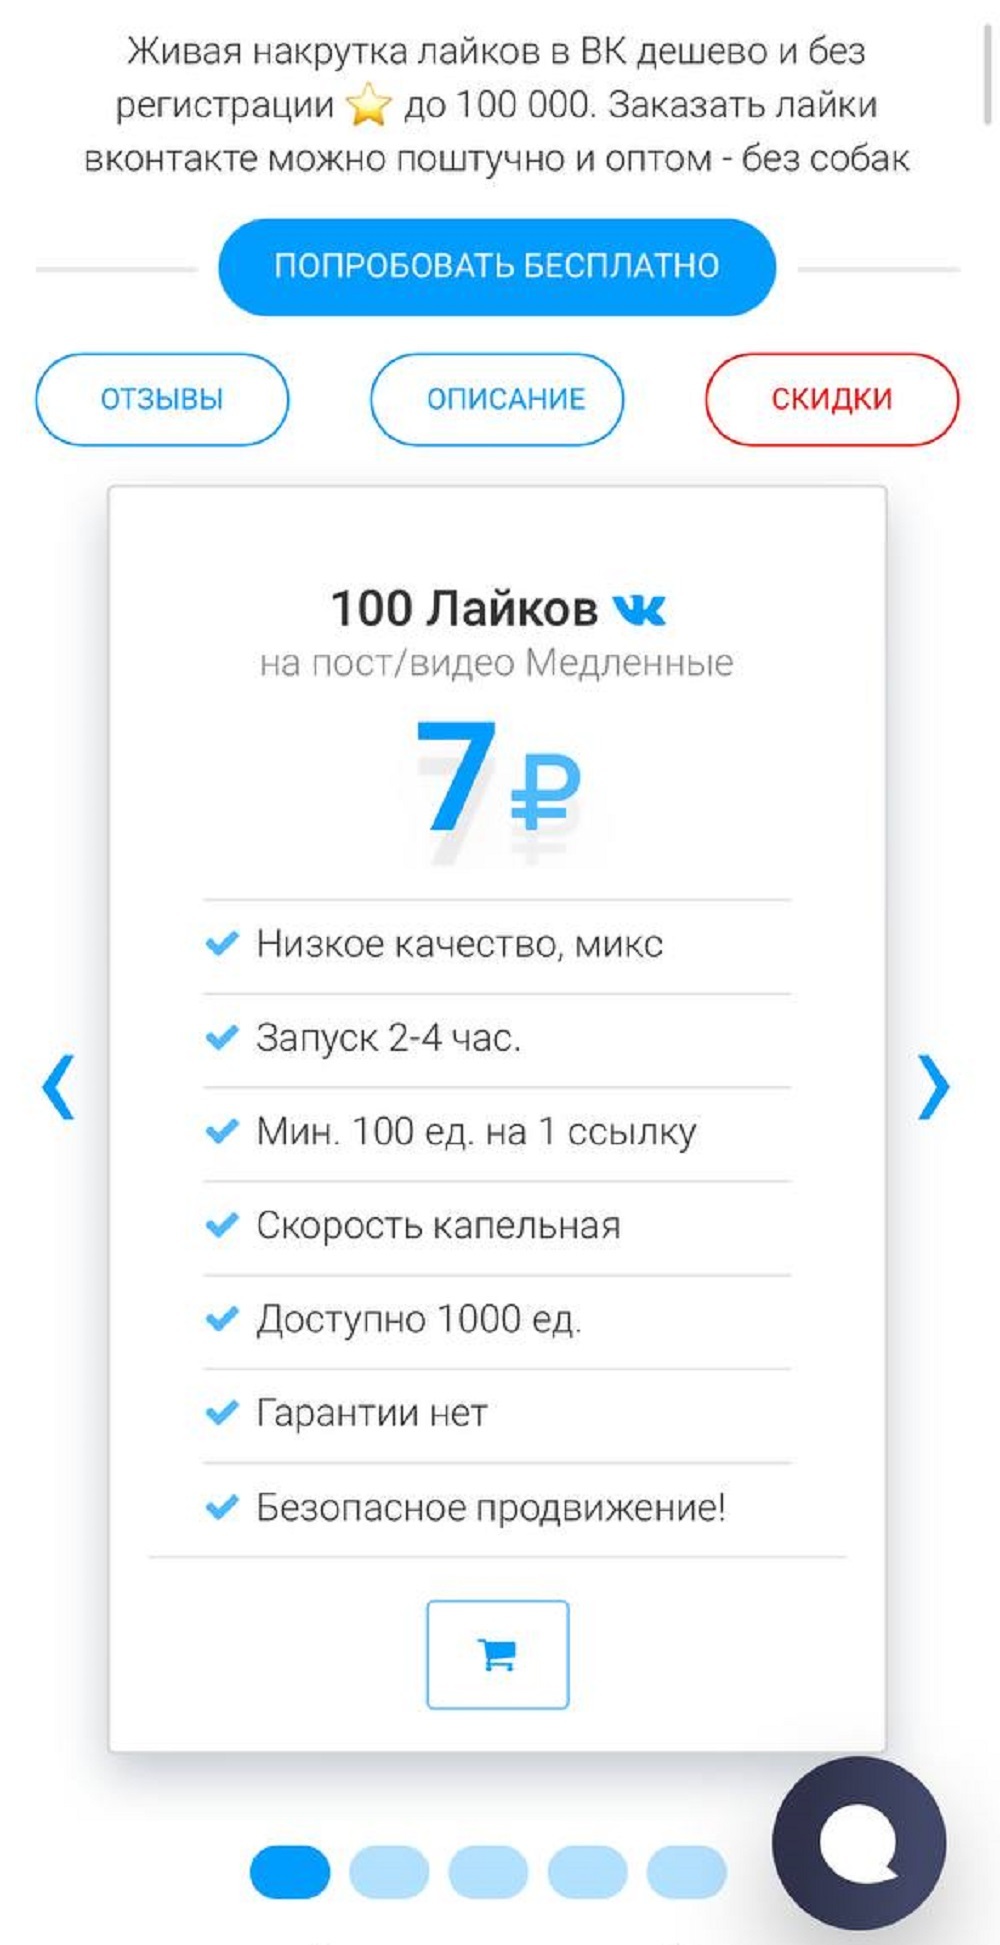 Как повысить охват подписчиков ВКонтакте